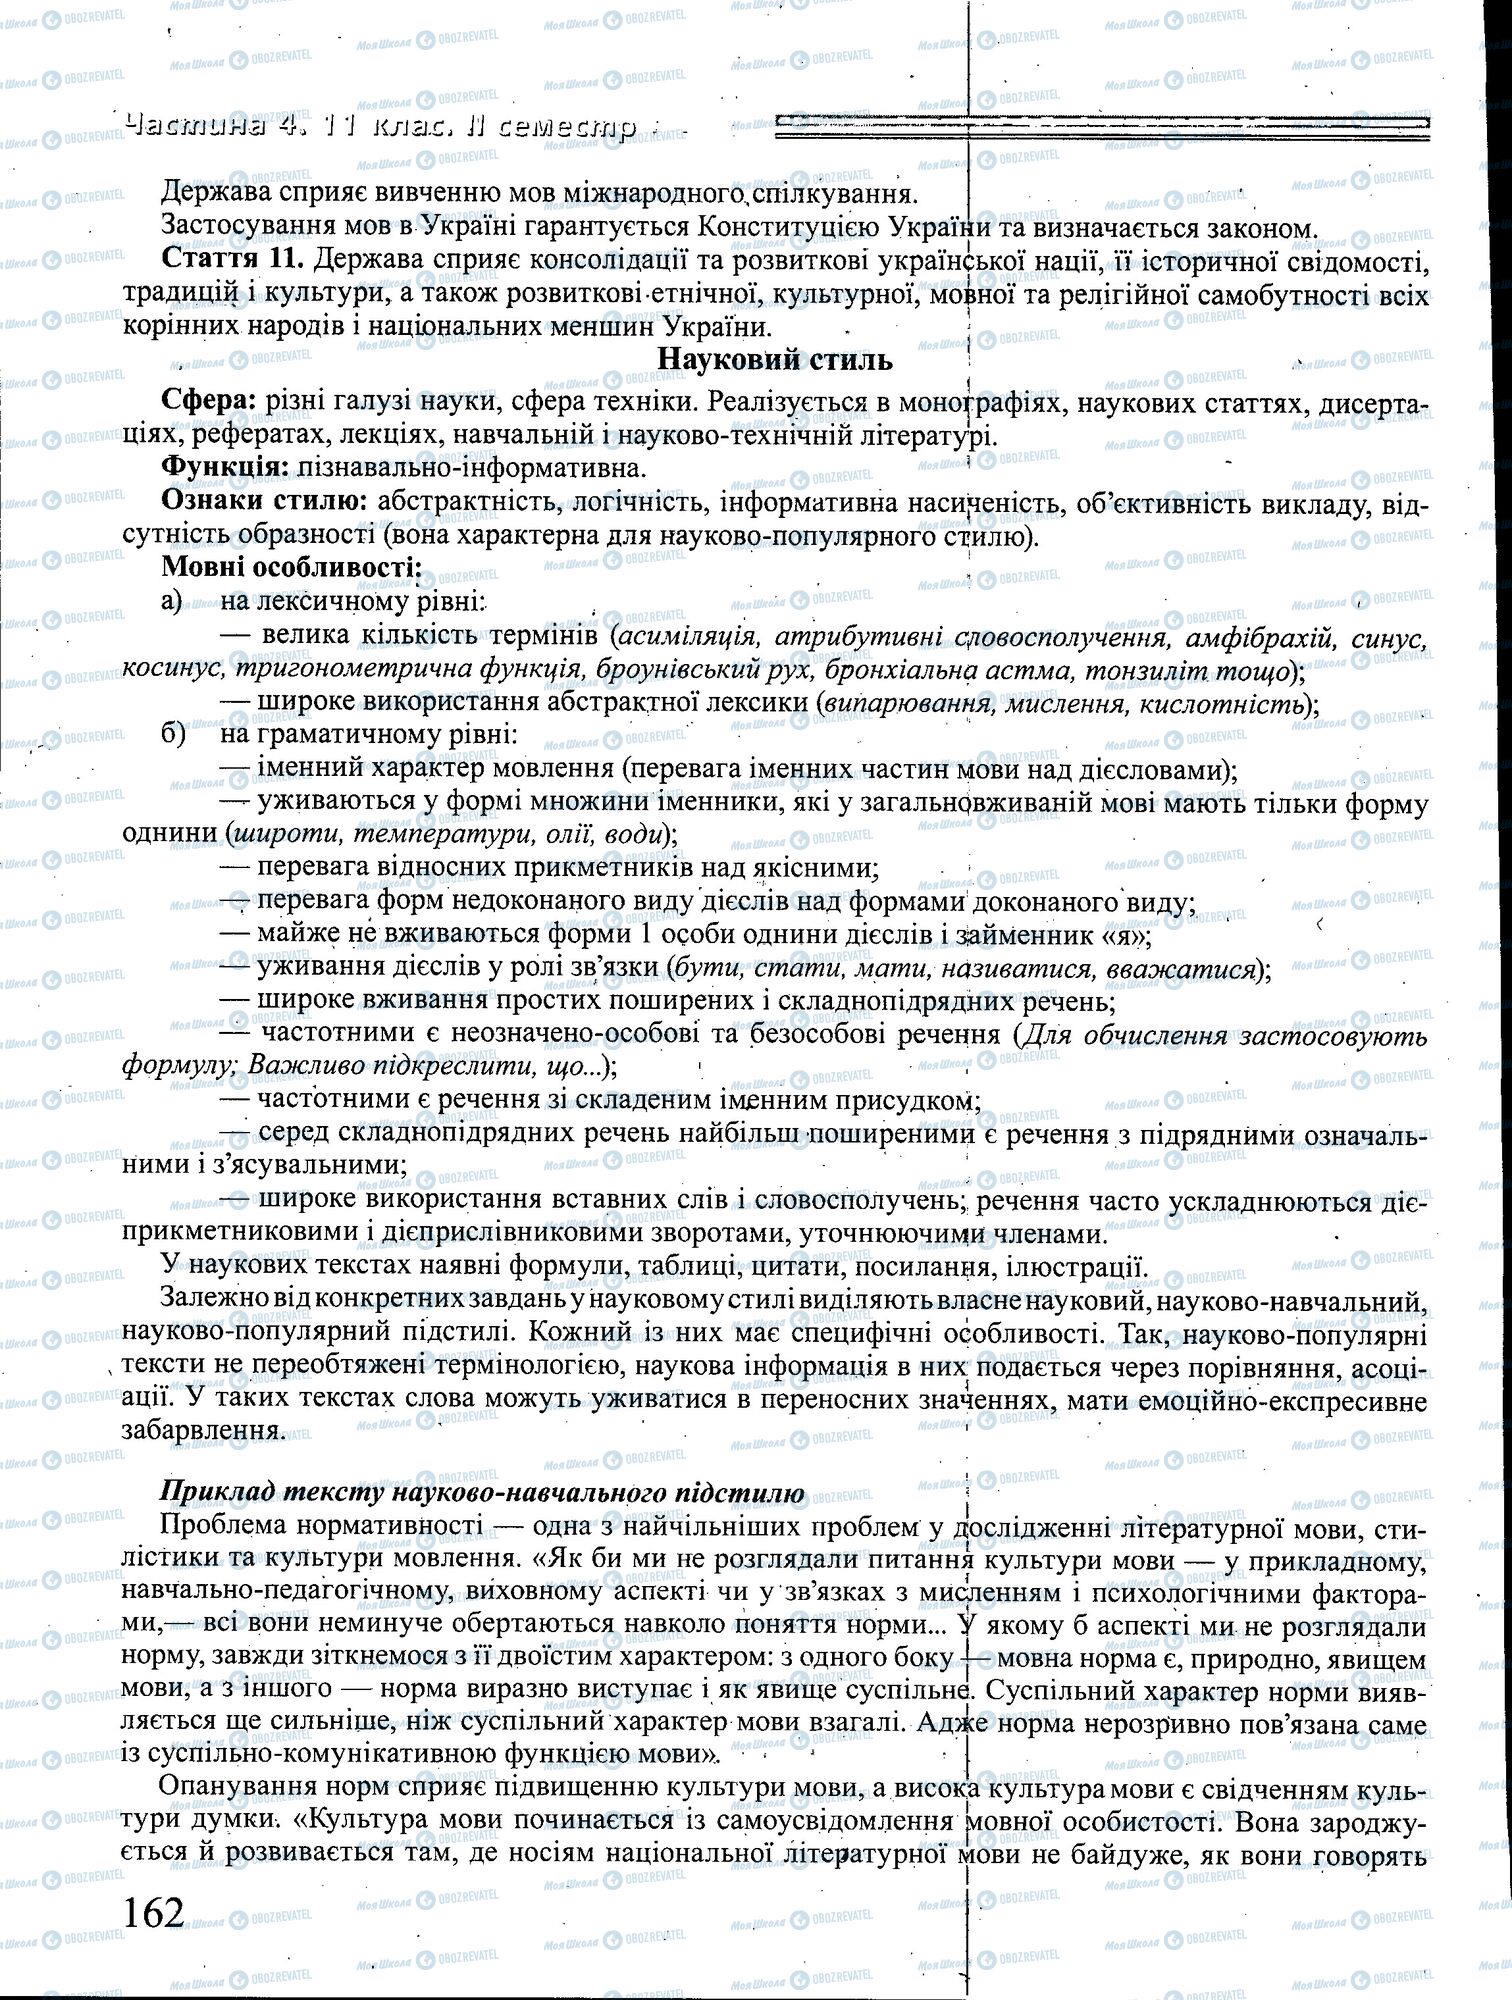 ДПА Укр мова 4 класс страница 162